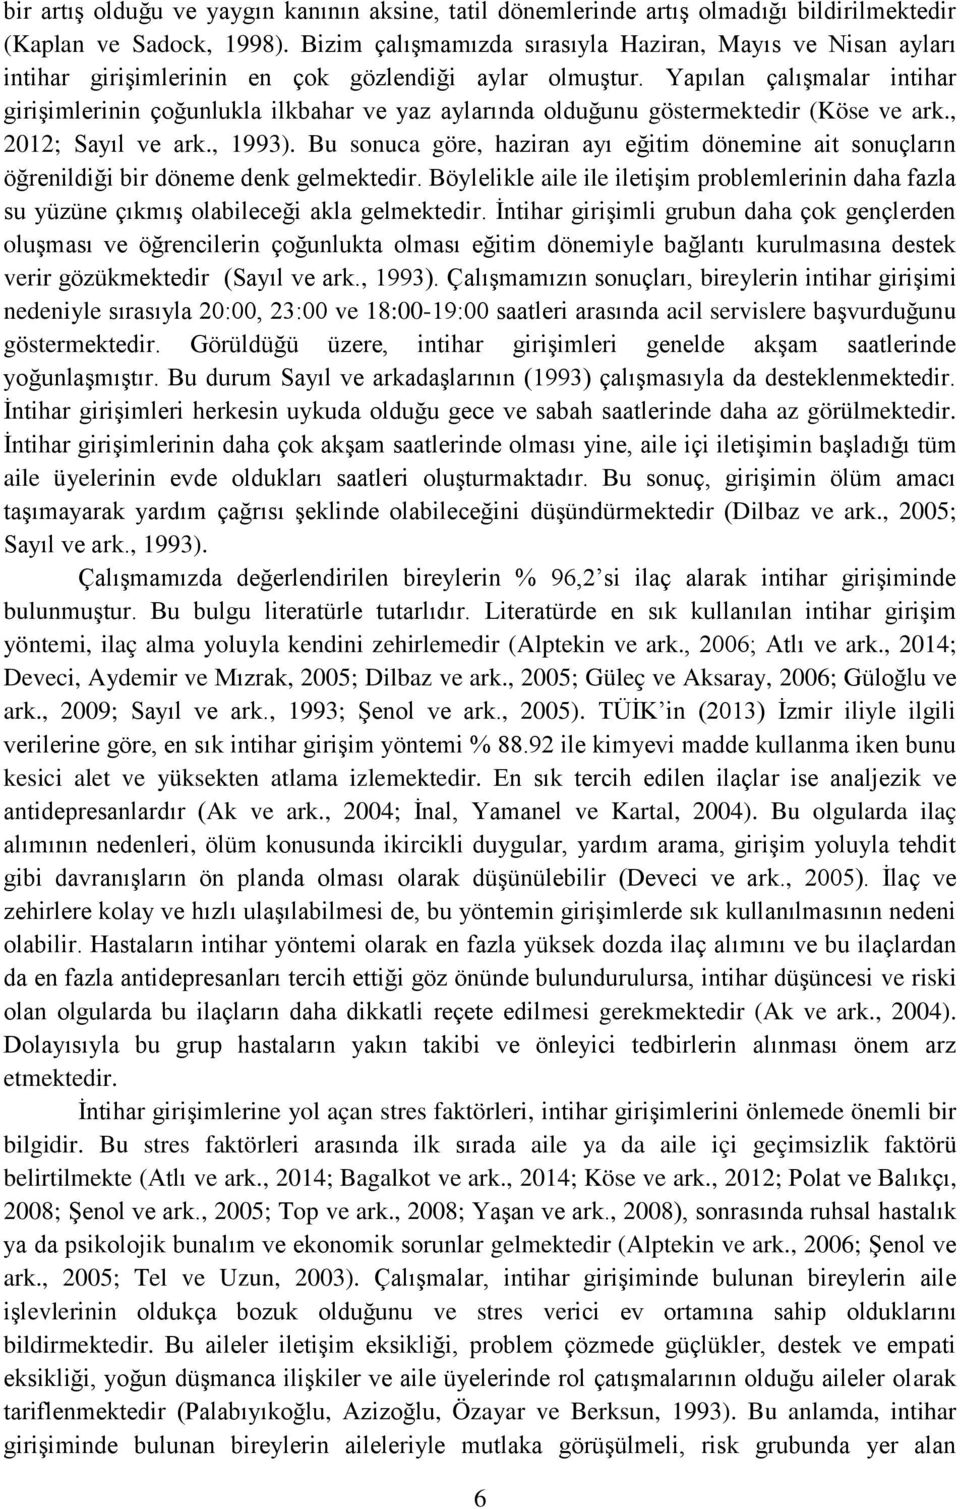 Yapılan çalışmalar intihar girişimlerinin çoğunlukla ilkbahar ve yaz aylarında olduğunu göstermektedir (Köse ve ark., 2012; Sayıl ve ark., 1993).